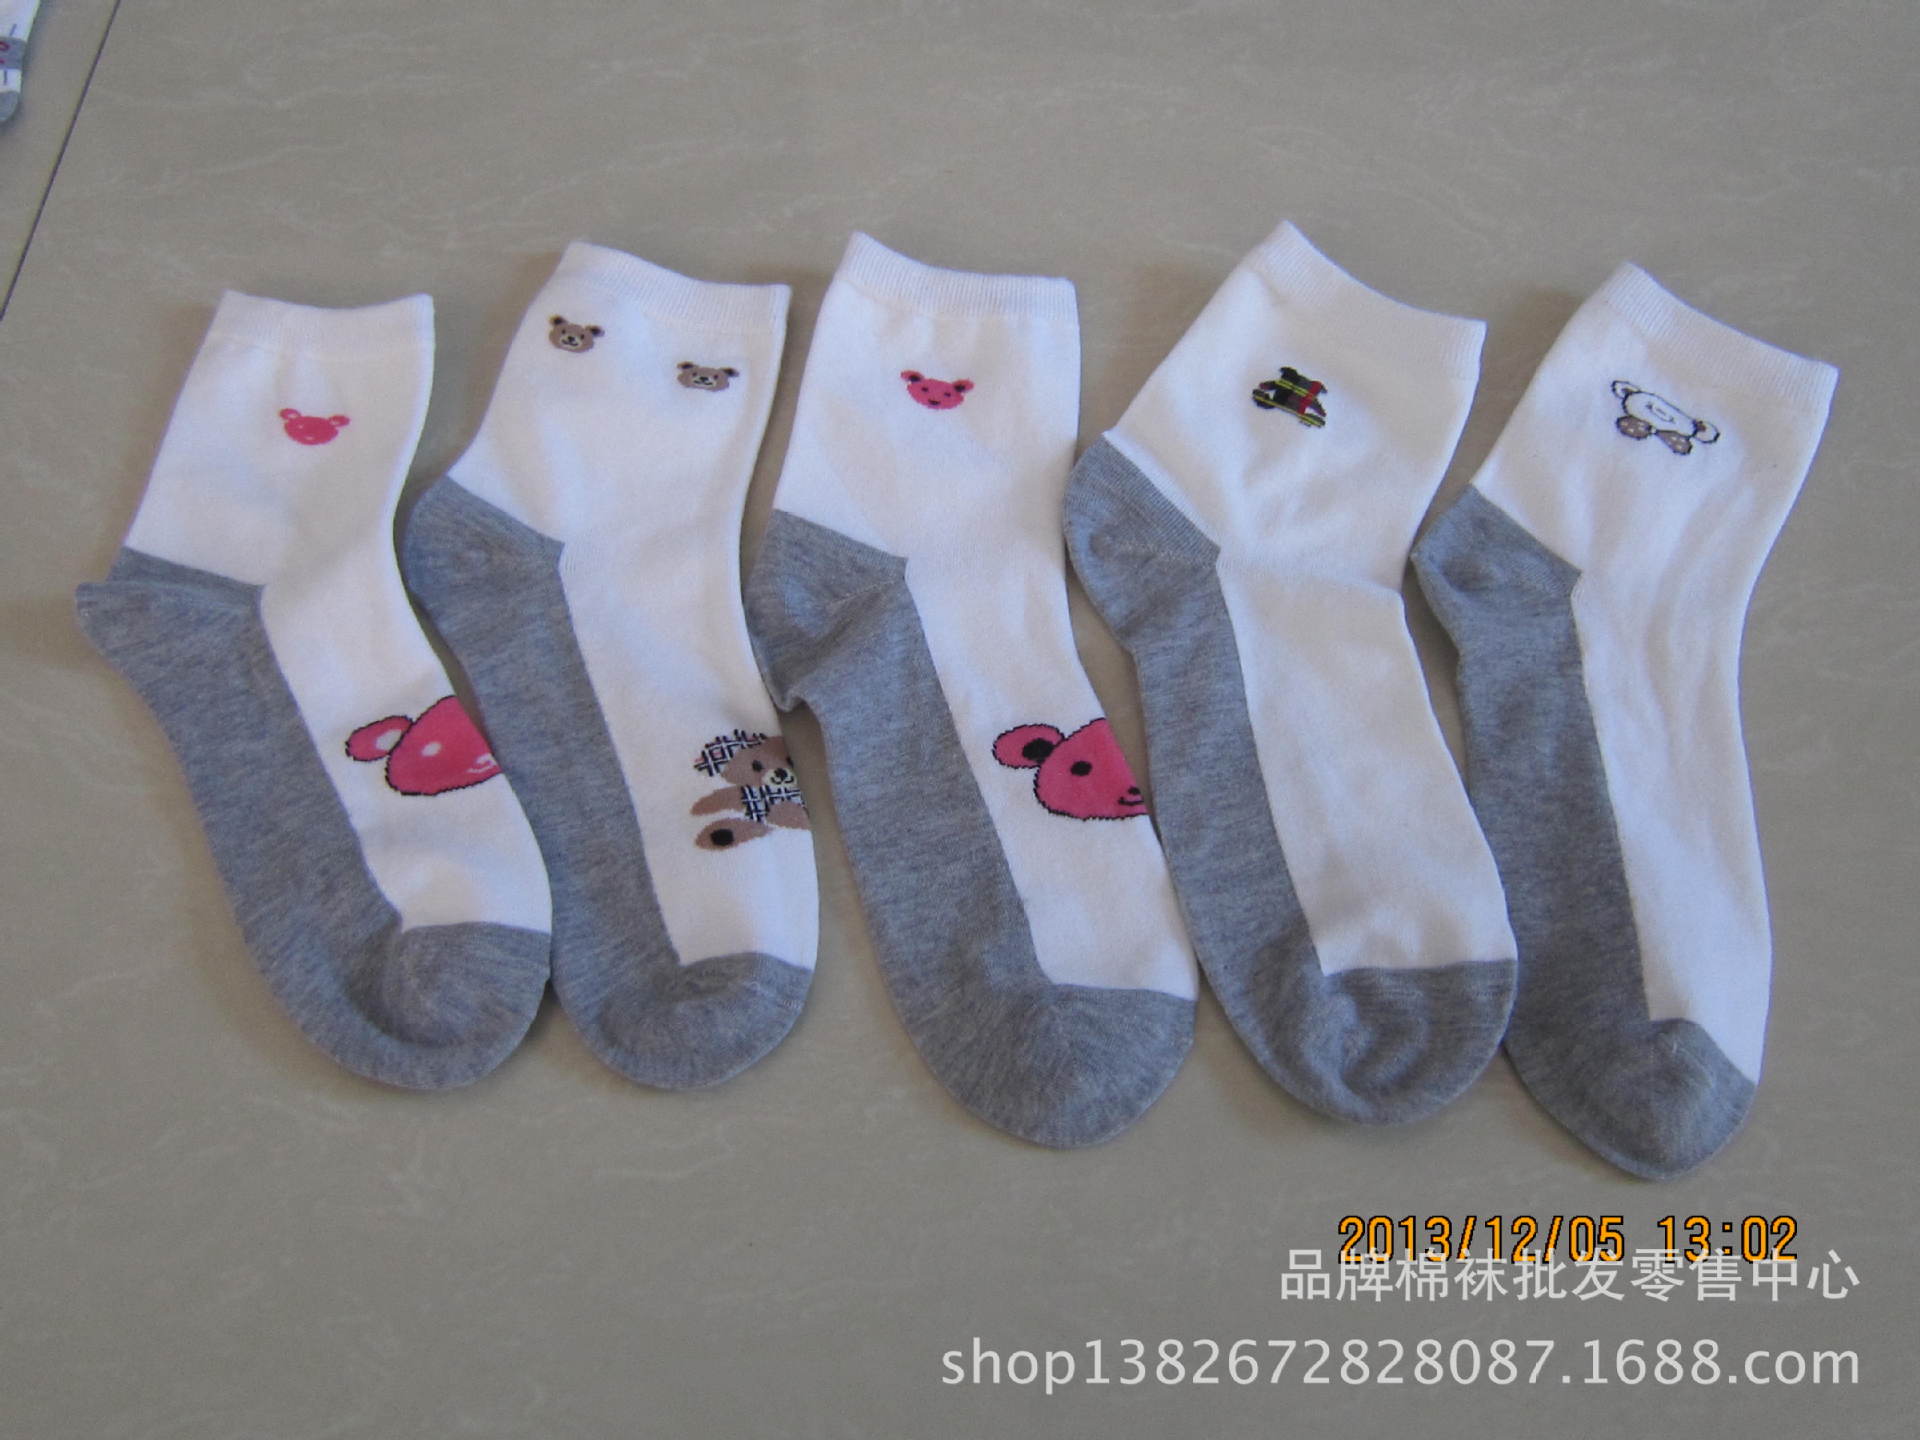 【纯棉灰底女袜】价格,厂家,图片,袜子,品牌棉袜